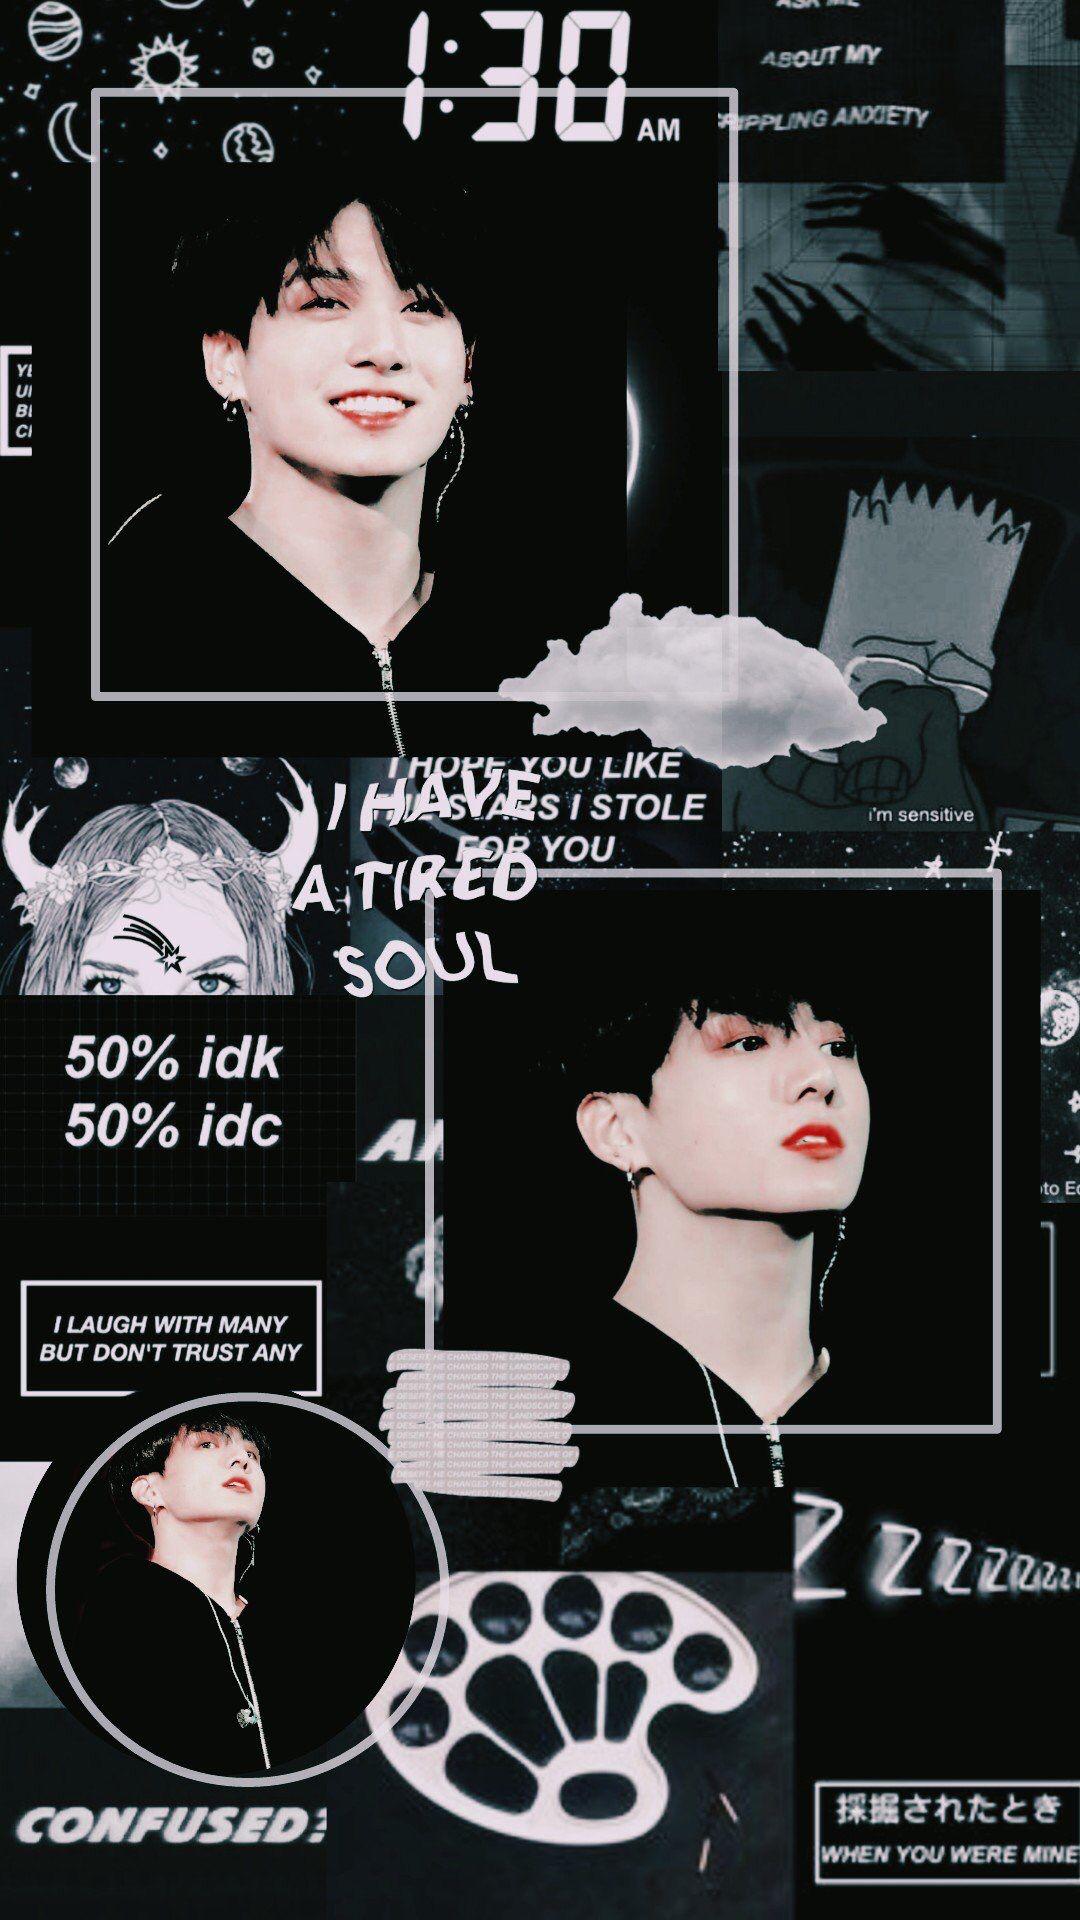 BTS Jungkook black aesthetic wallpaper - Jungkook